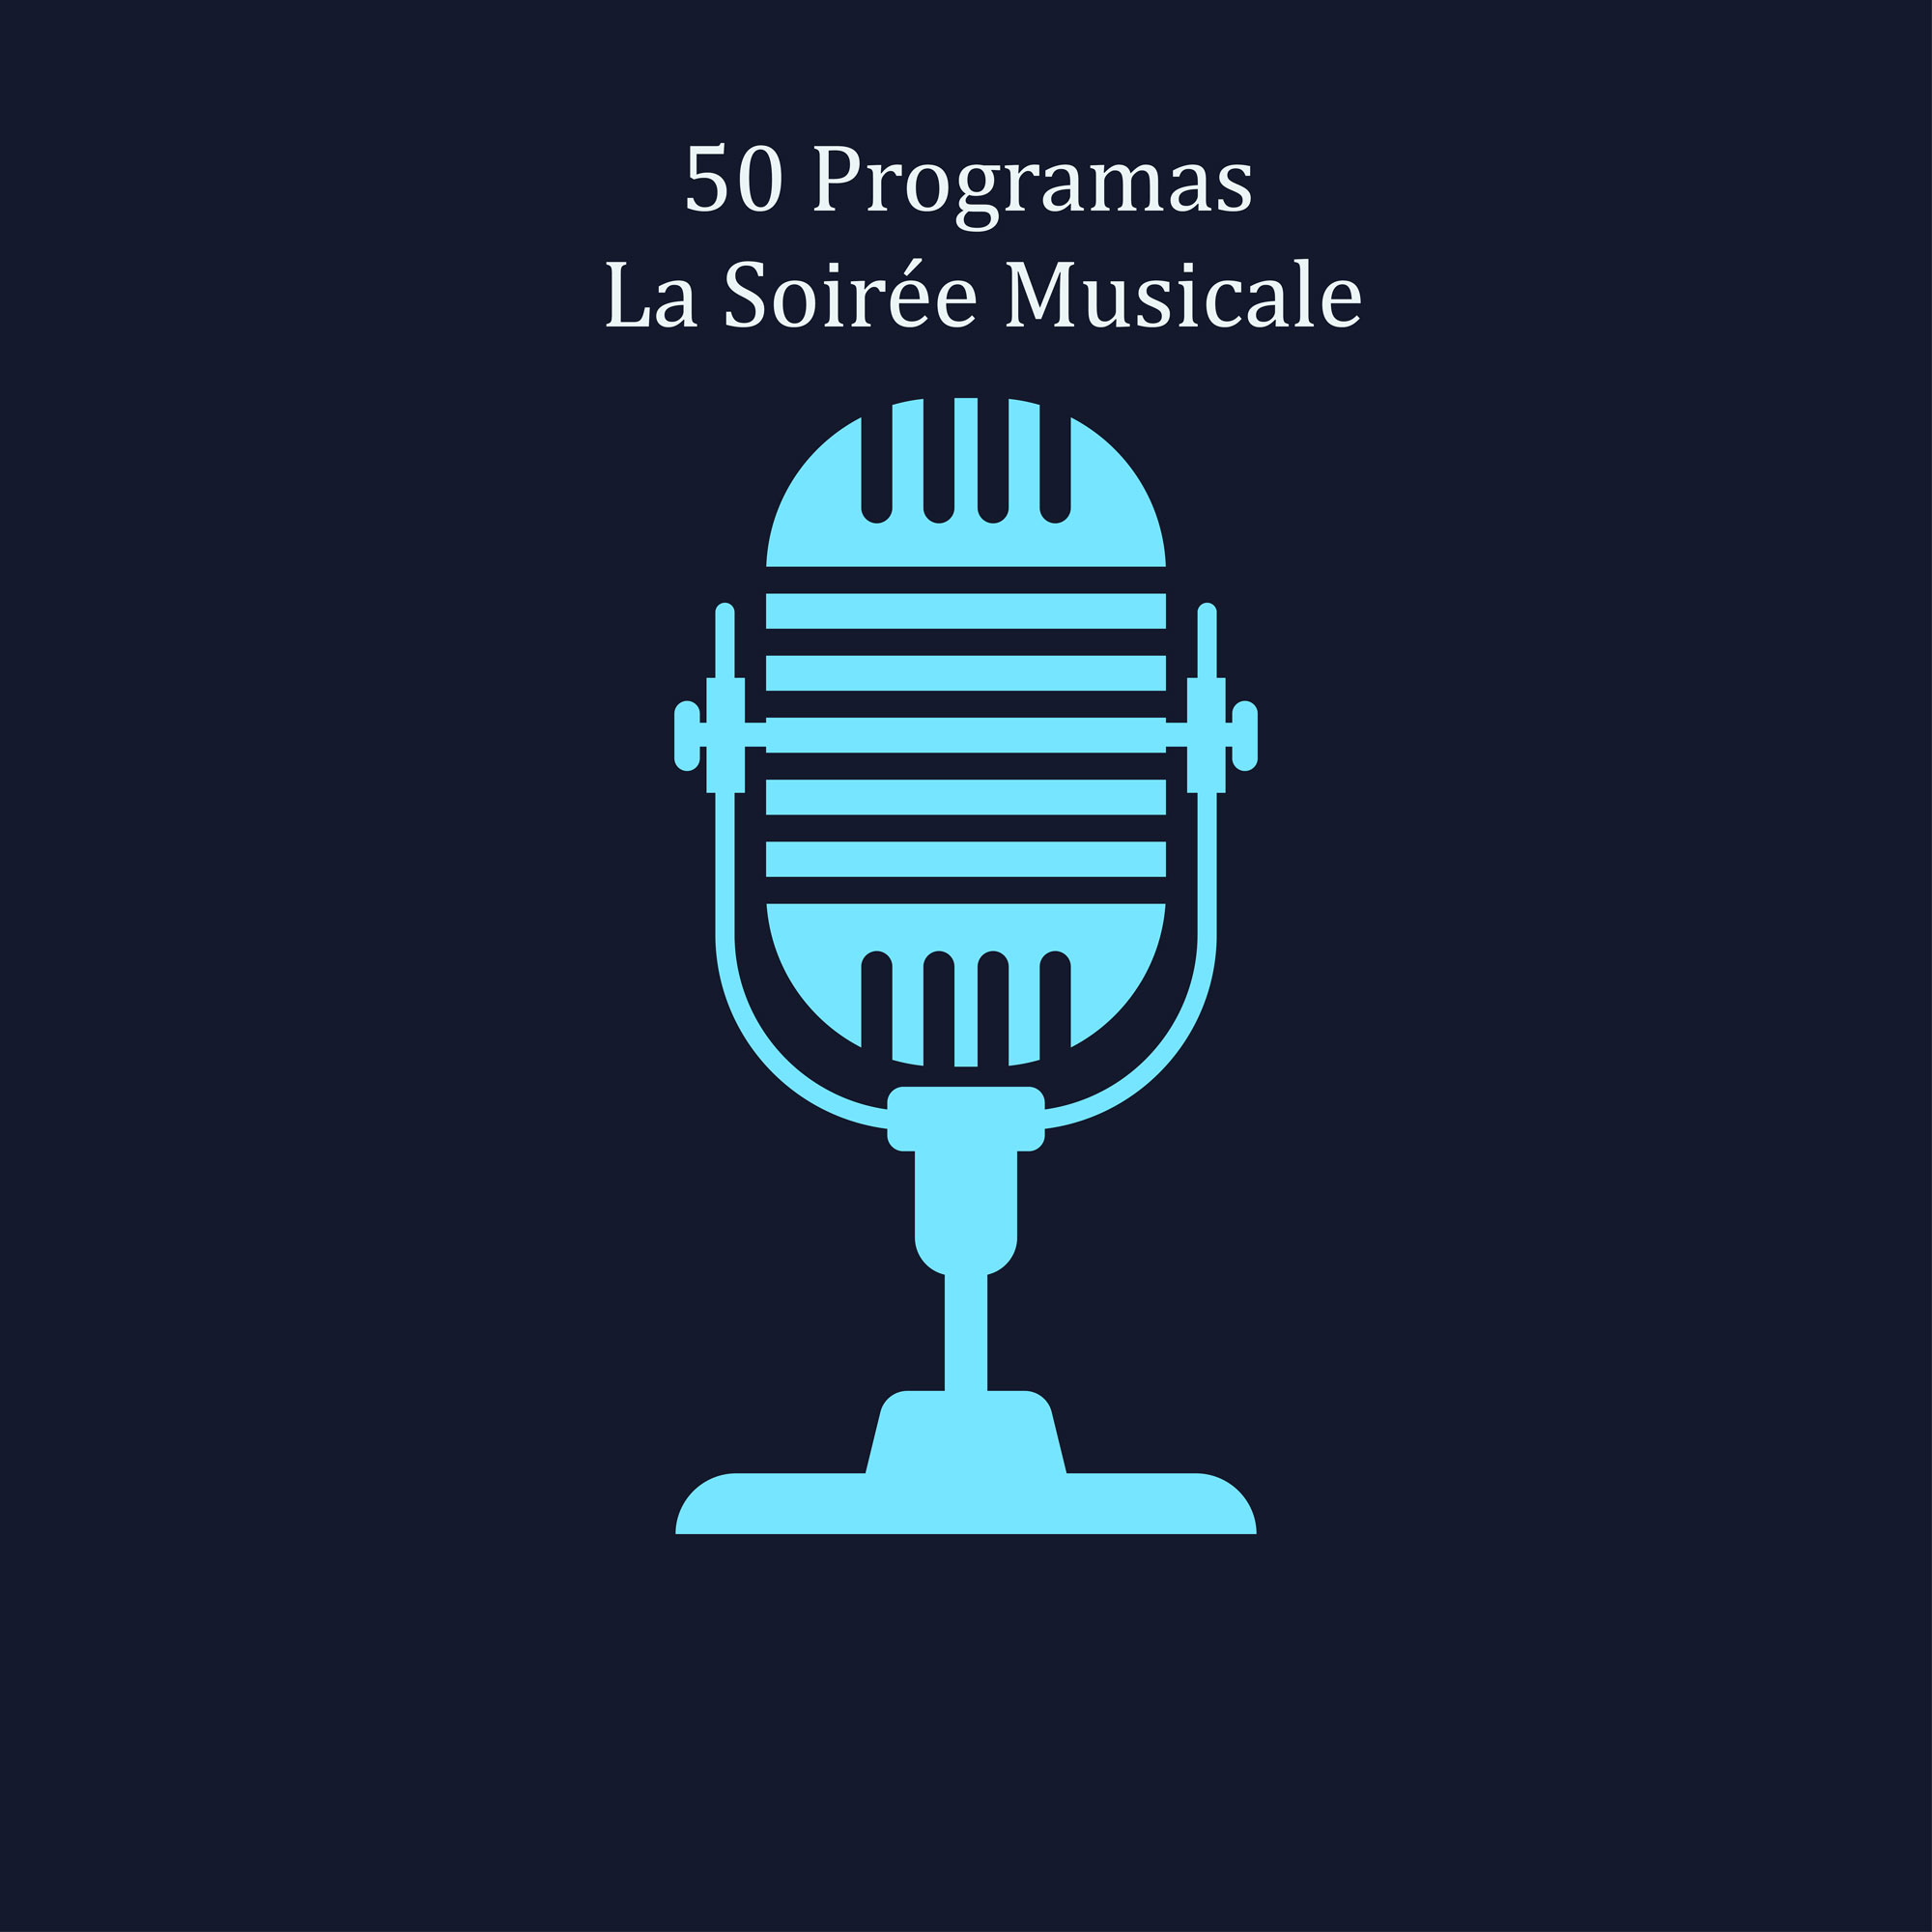 50 programas de La Soirée Musicale